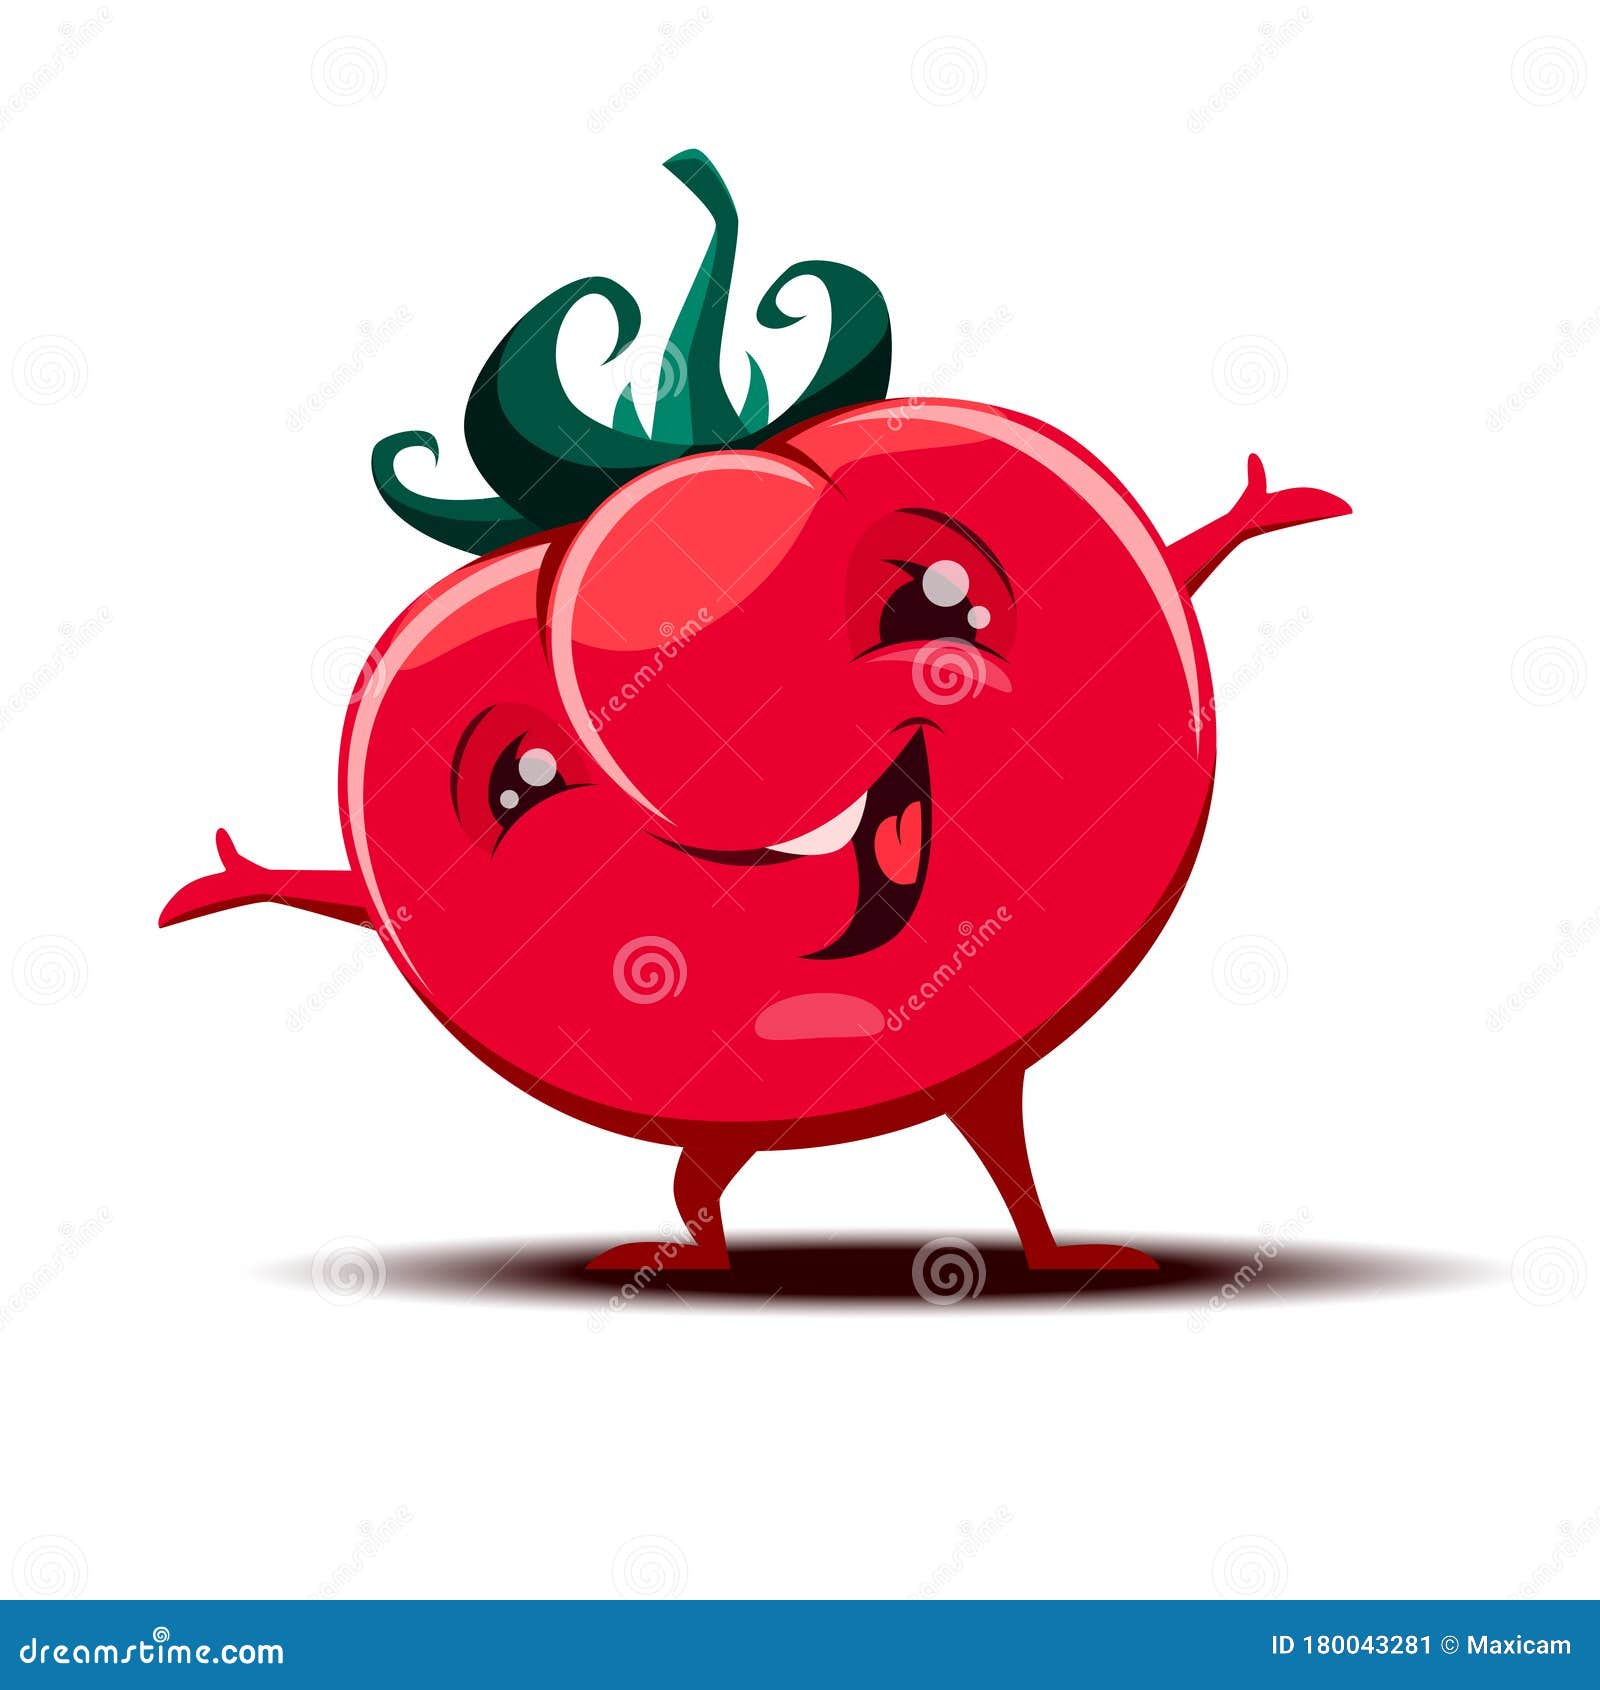 Cute little Tomato